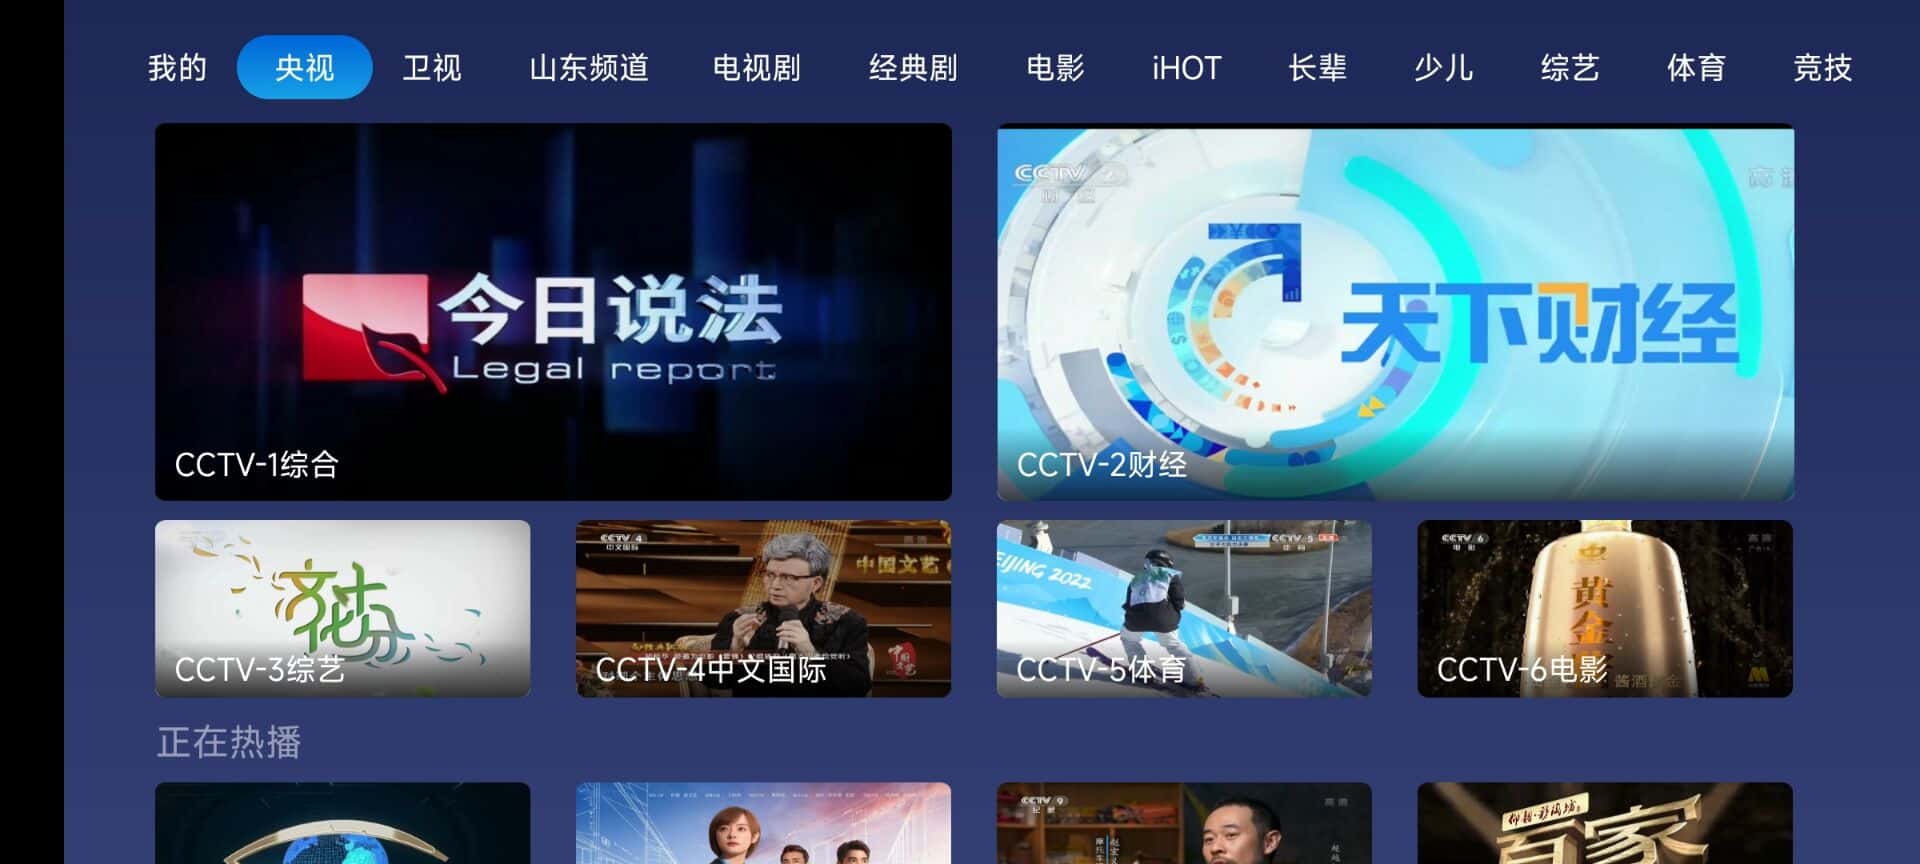 小鲸电视TV(电视直播软件) v1.3.1 免费纯净版-无痕哥's Blog